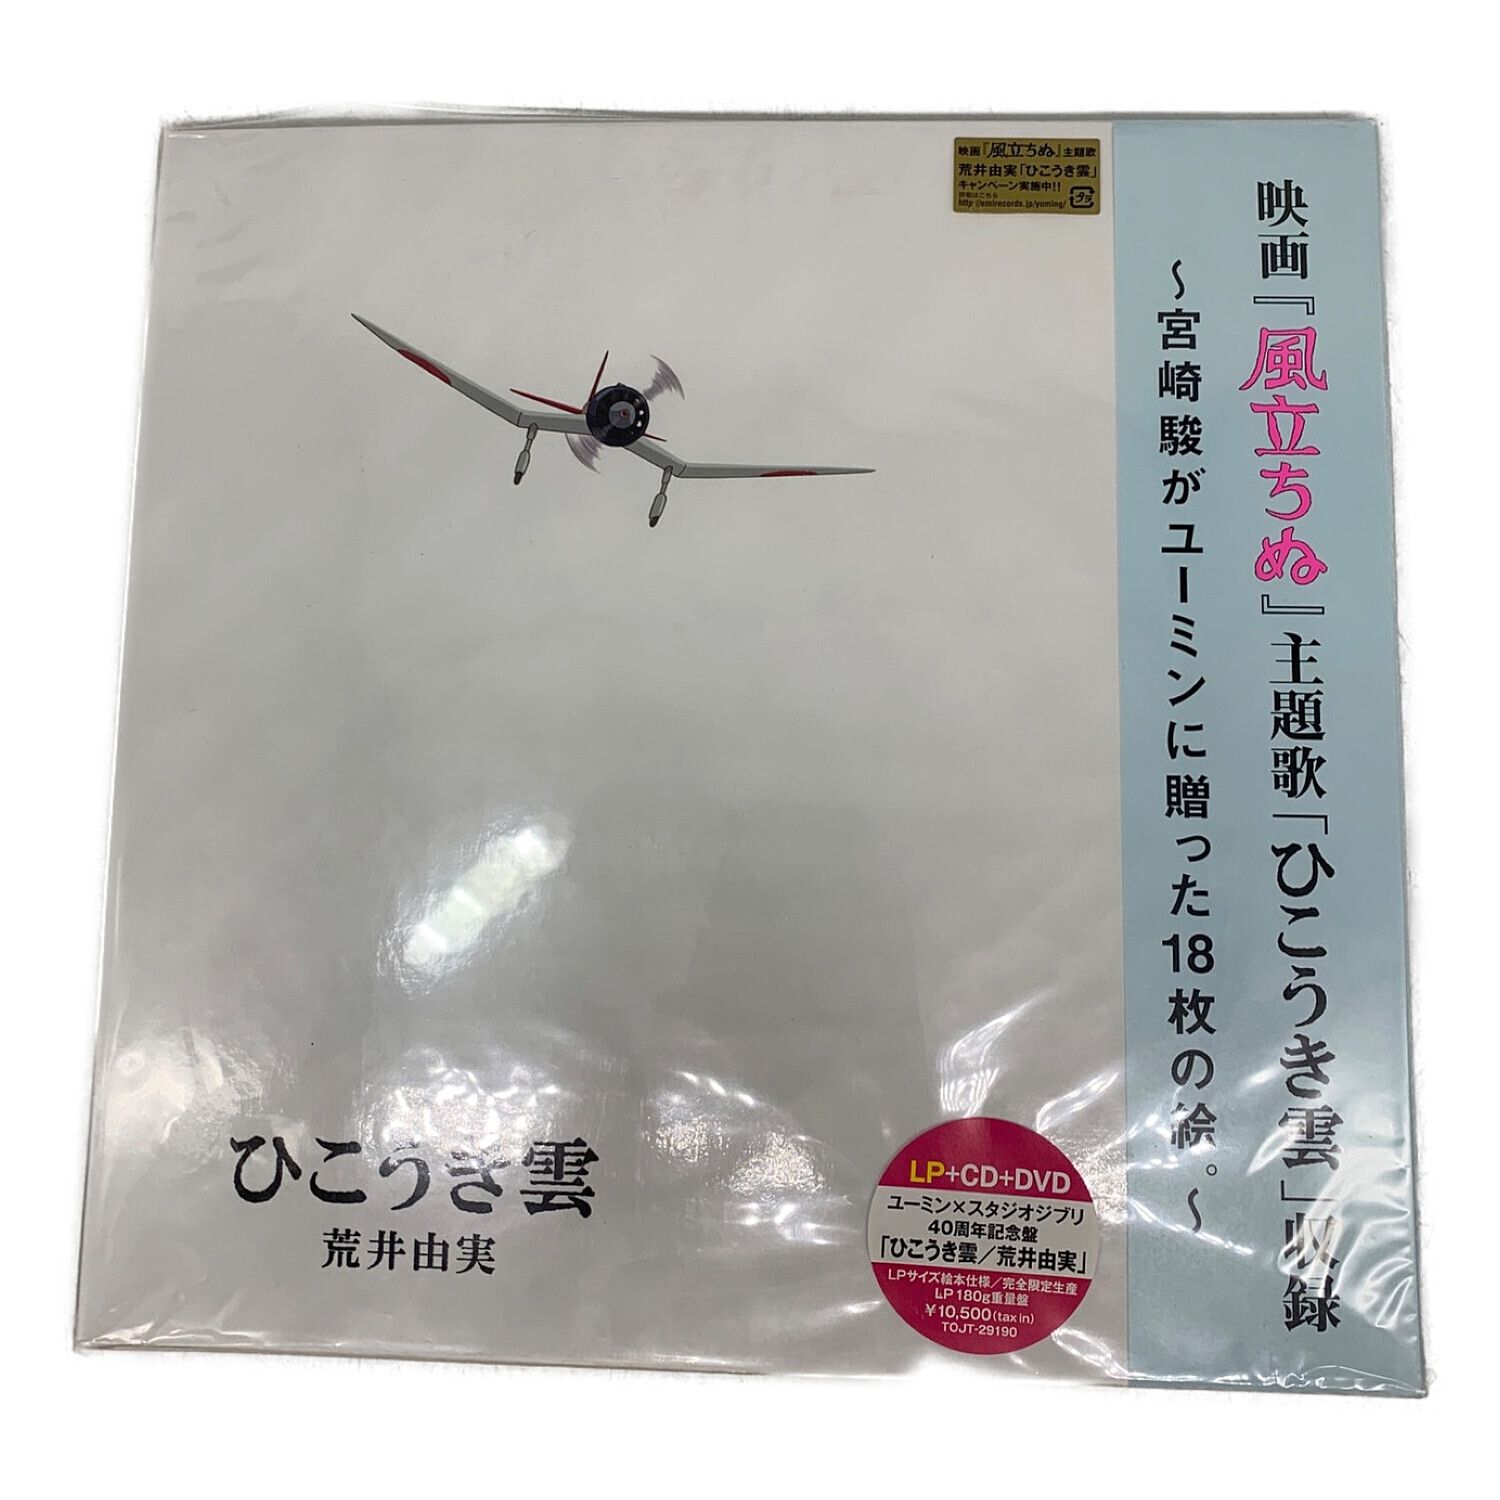 ユーミン×スタジオジブリ 40周年記念盤「ひこうき雲」 完全生産限定盤 ...